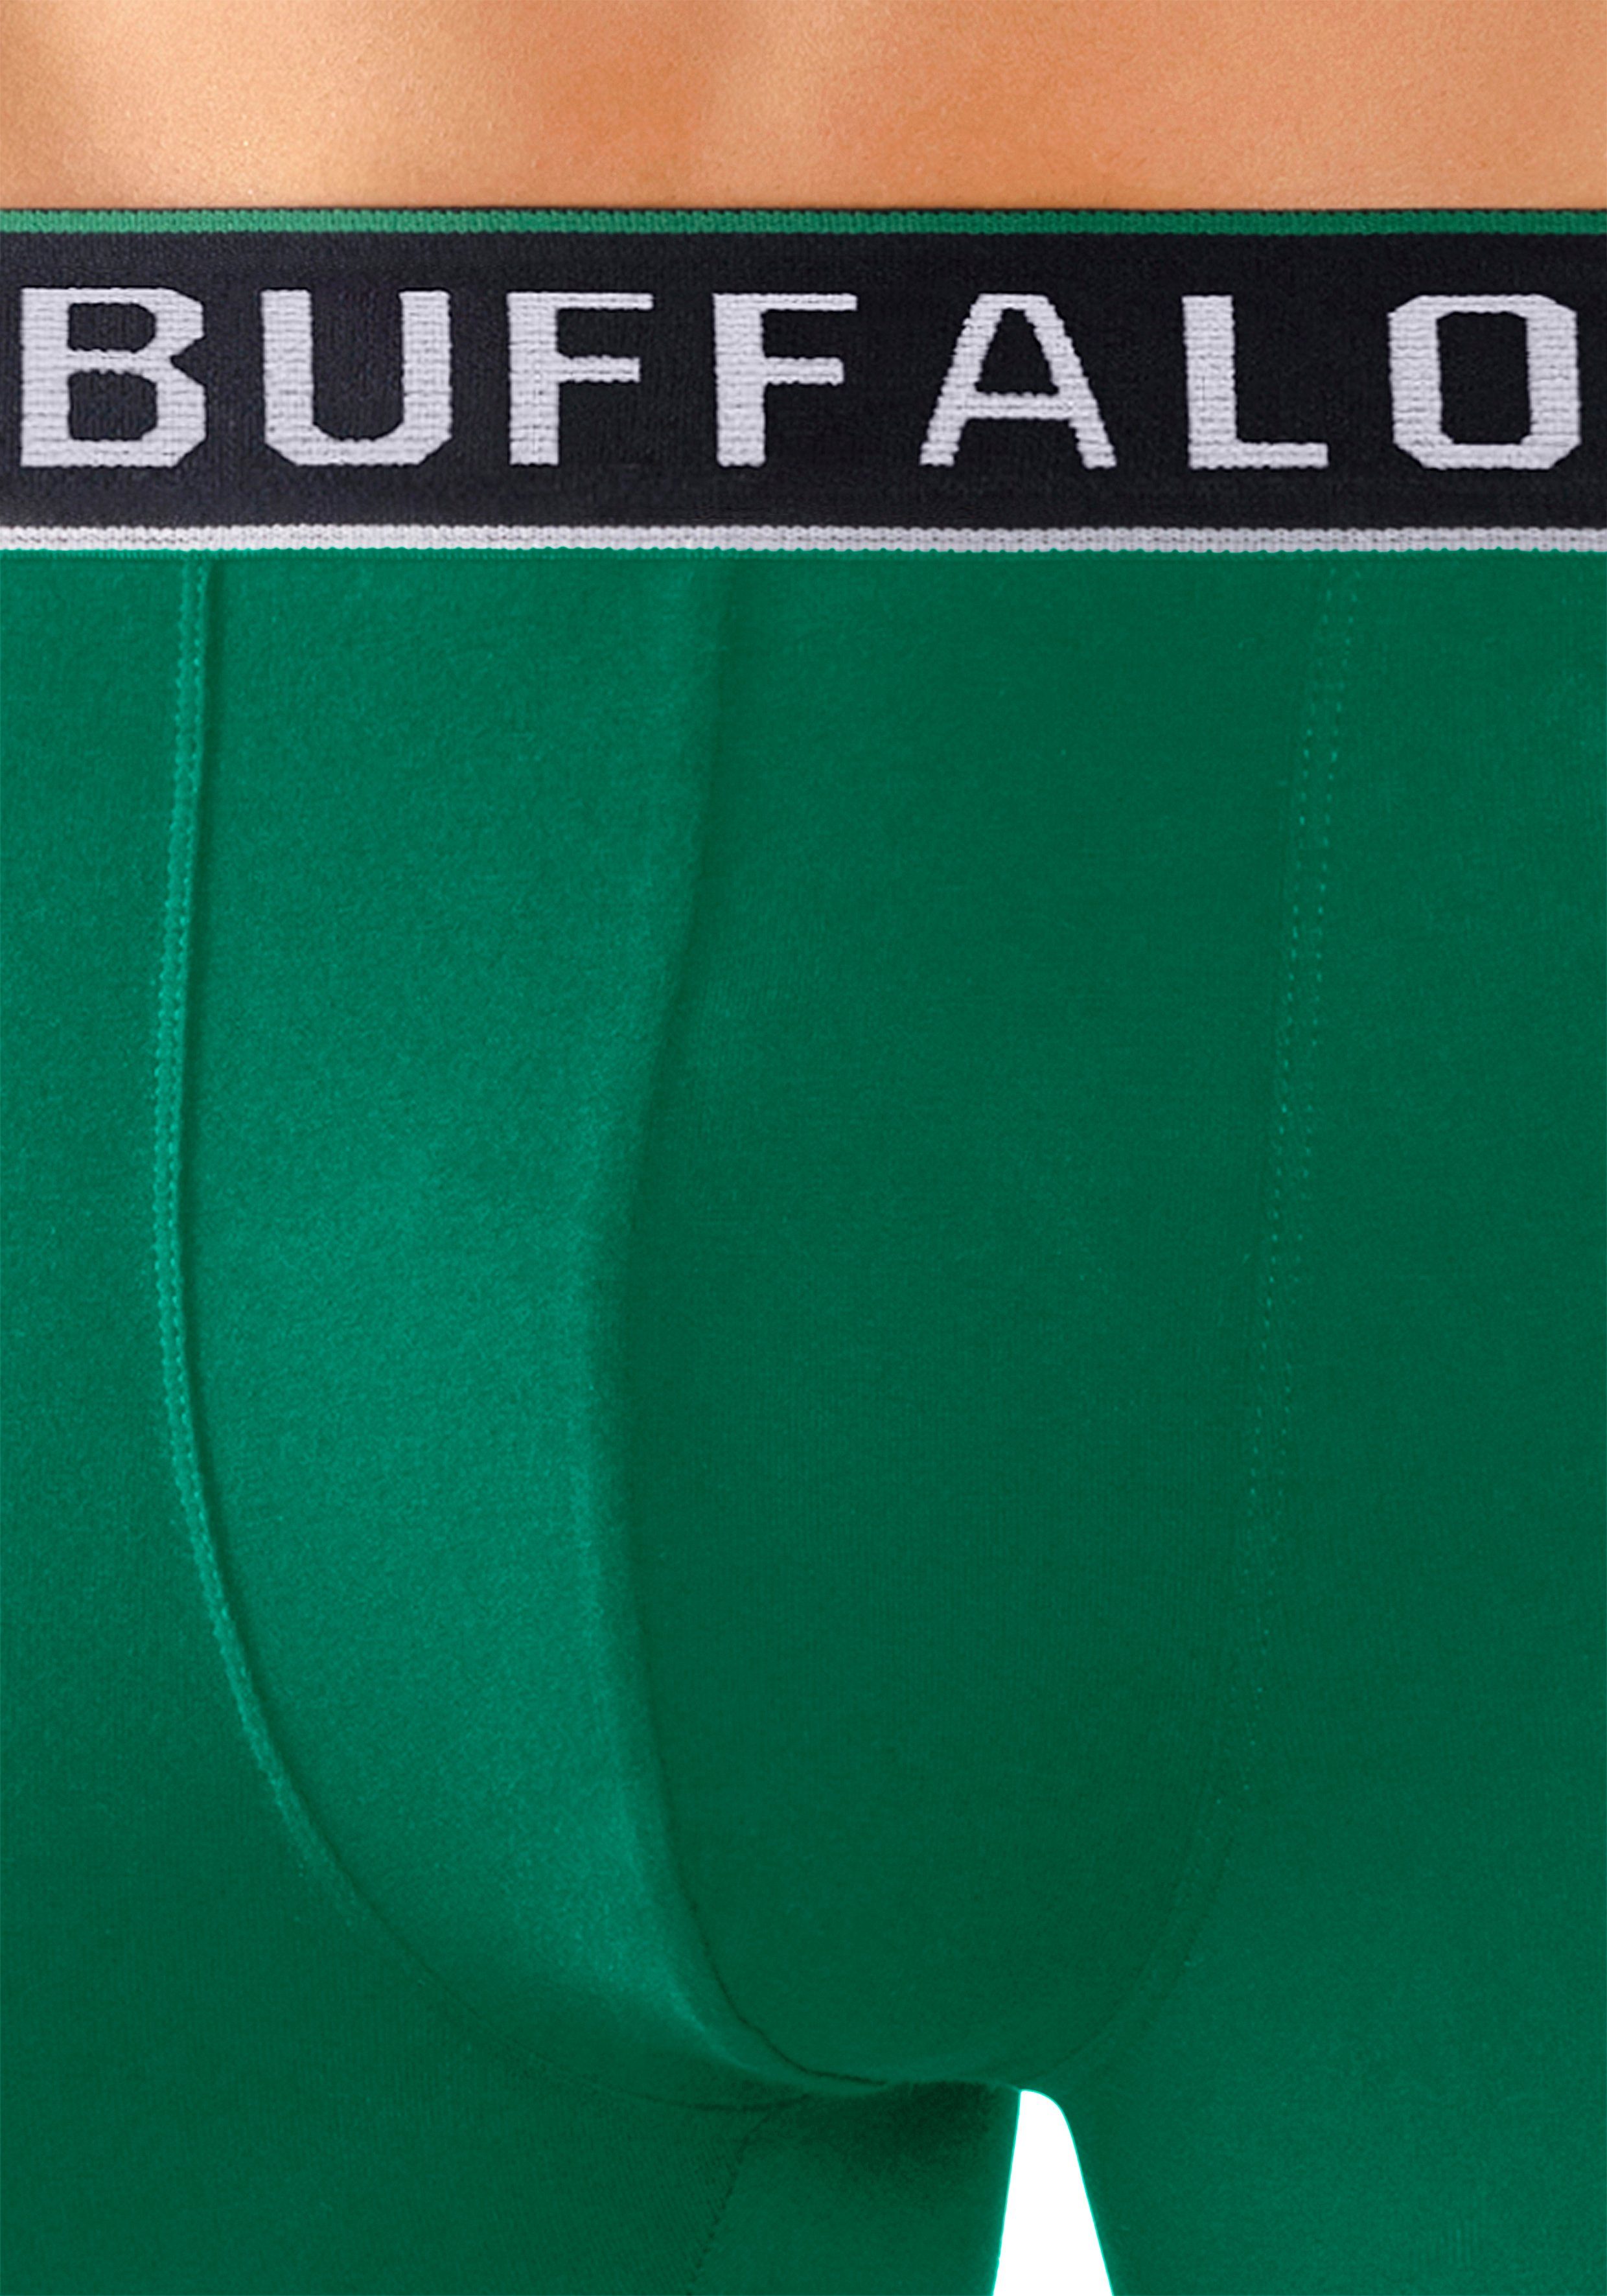 grün, Buffalo College 3-St) (Packung, Webbund im Boxer rot, Design blau